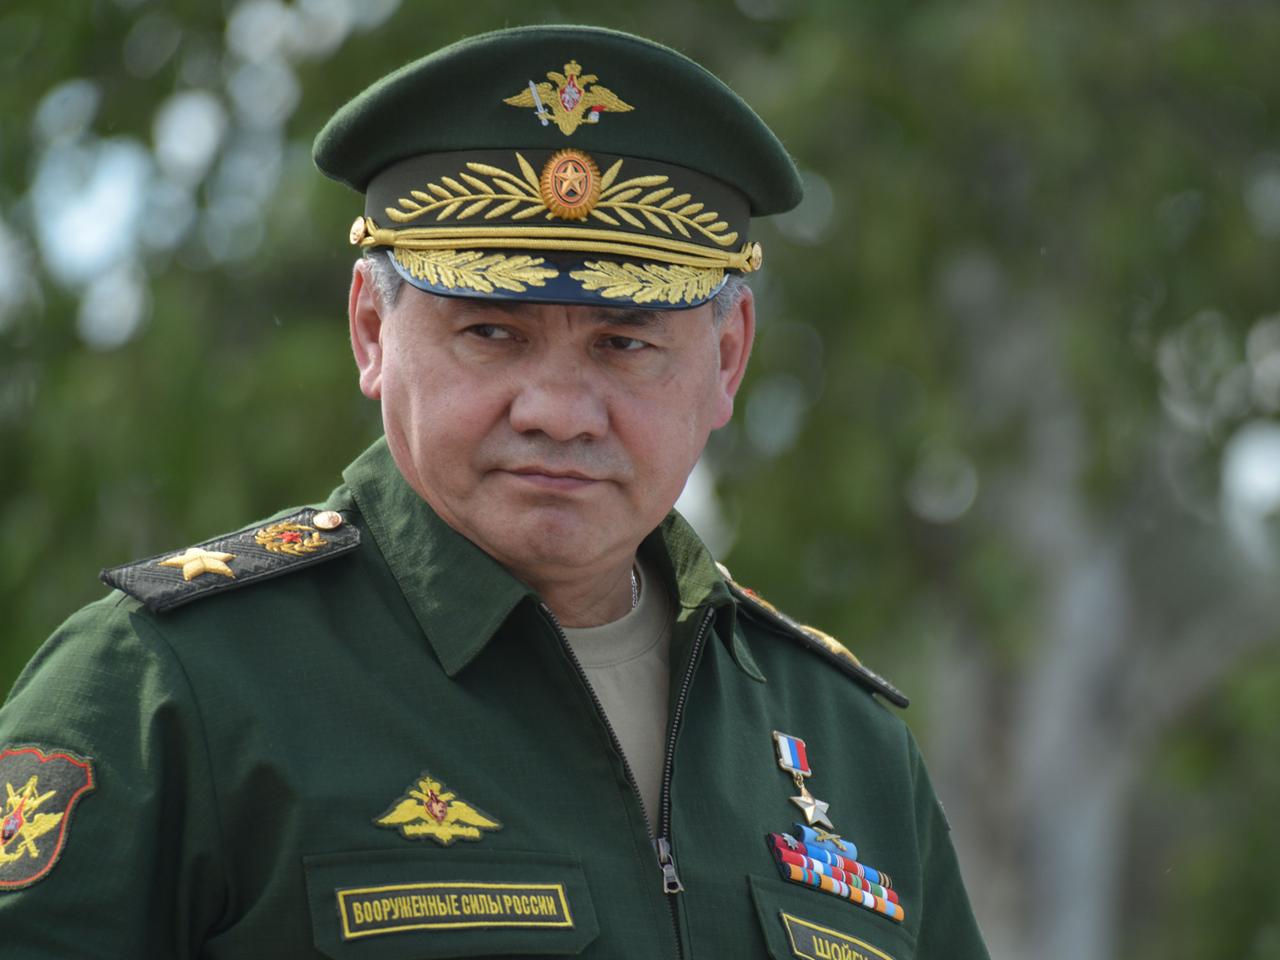 Der russische Verteidigungsminister Sergej Schoigu in Uniform während einer militärischen Übung der russischen Luftwaffe.